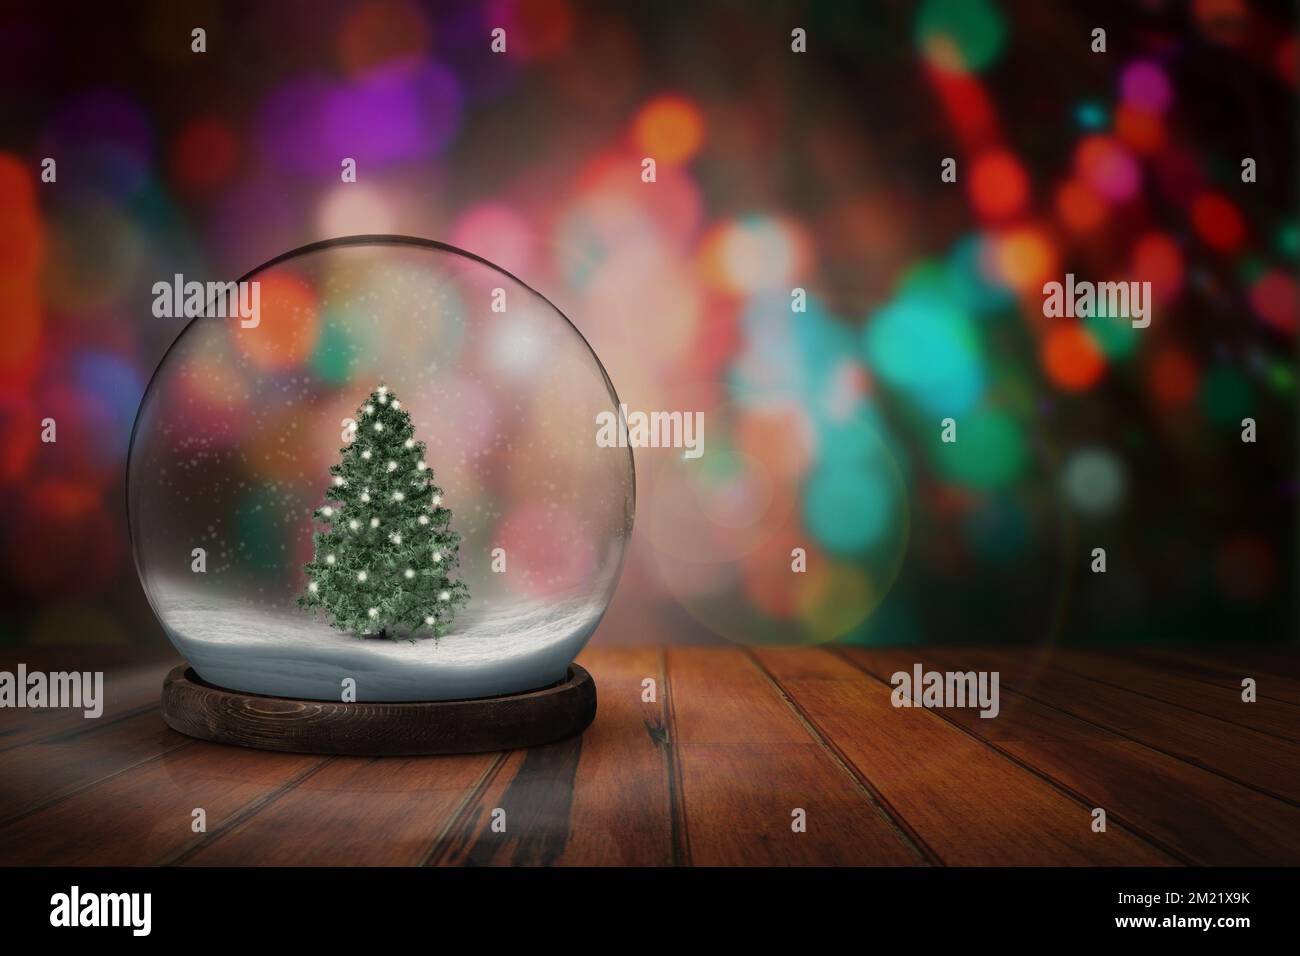 Weihnachtsfeiertage in einem Schneeball. Schneeball mit weihnachten auf einem Schneeball mit dunklem Bokeh-Hintergrund. Stockfoto